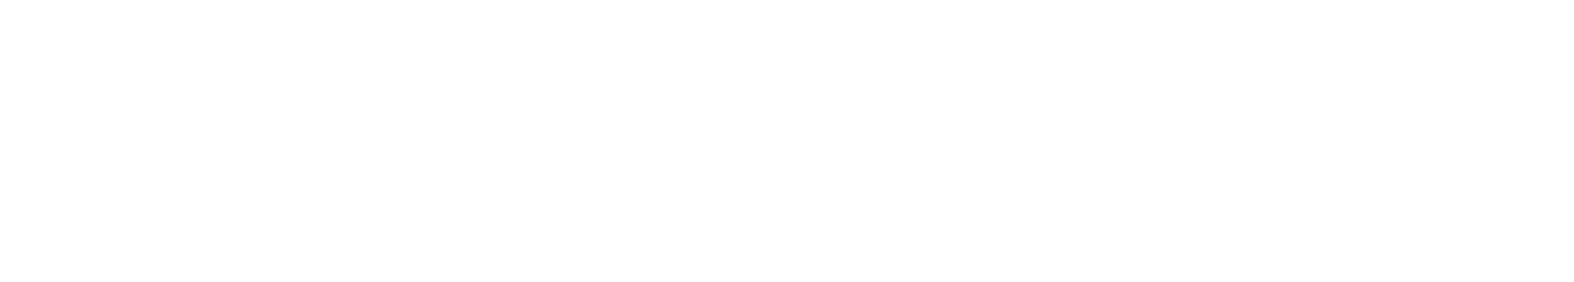 LiveWire Group logo grand pour les fonds sombres (PNG transparent)